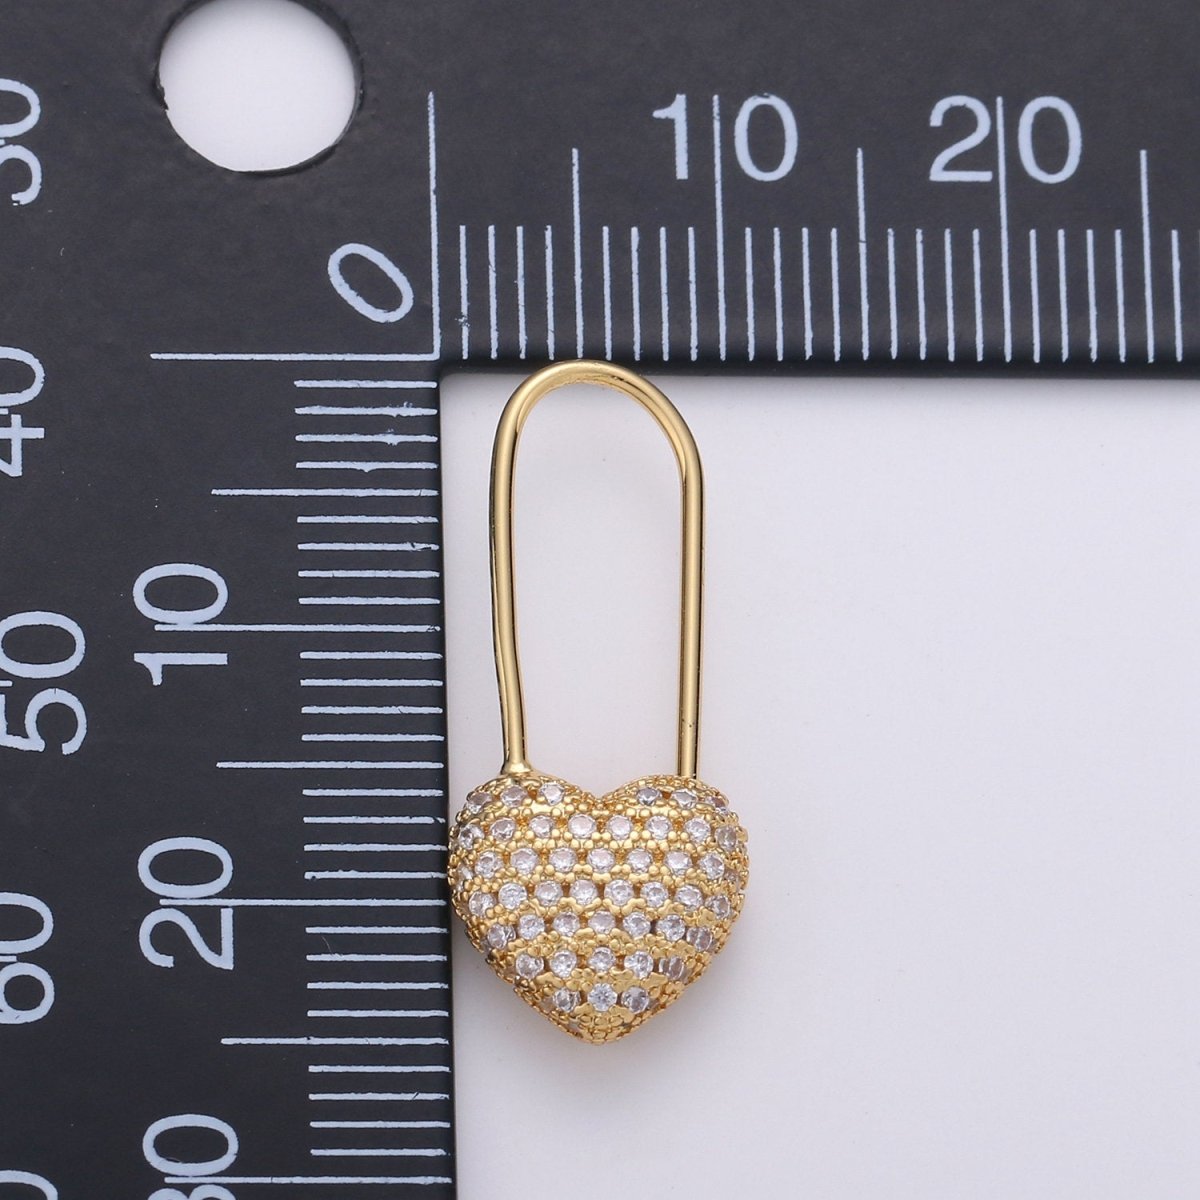 Gold Heart earrings Pin earrings Heart jewelry Unique earrings Unique jewelry Gold earrings Dainty earrings Delicate Earrings K-543 - DLUXCA